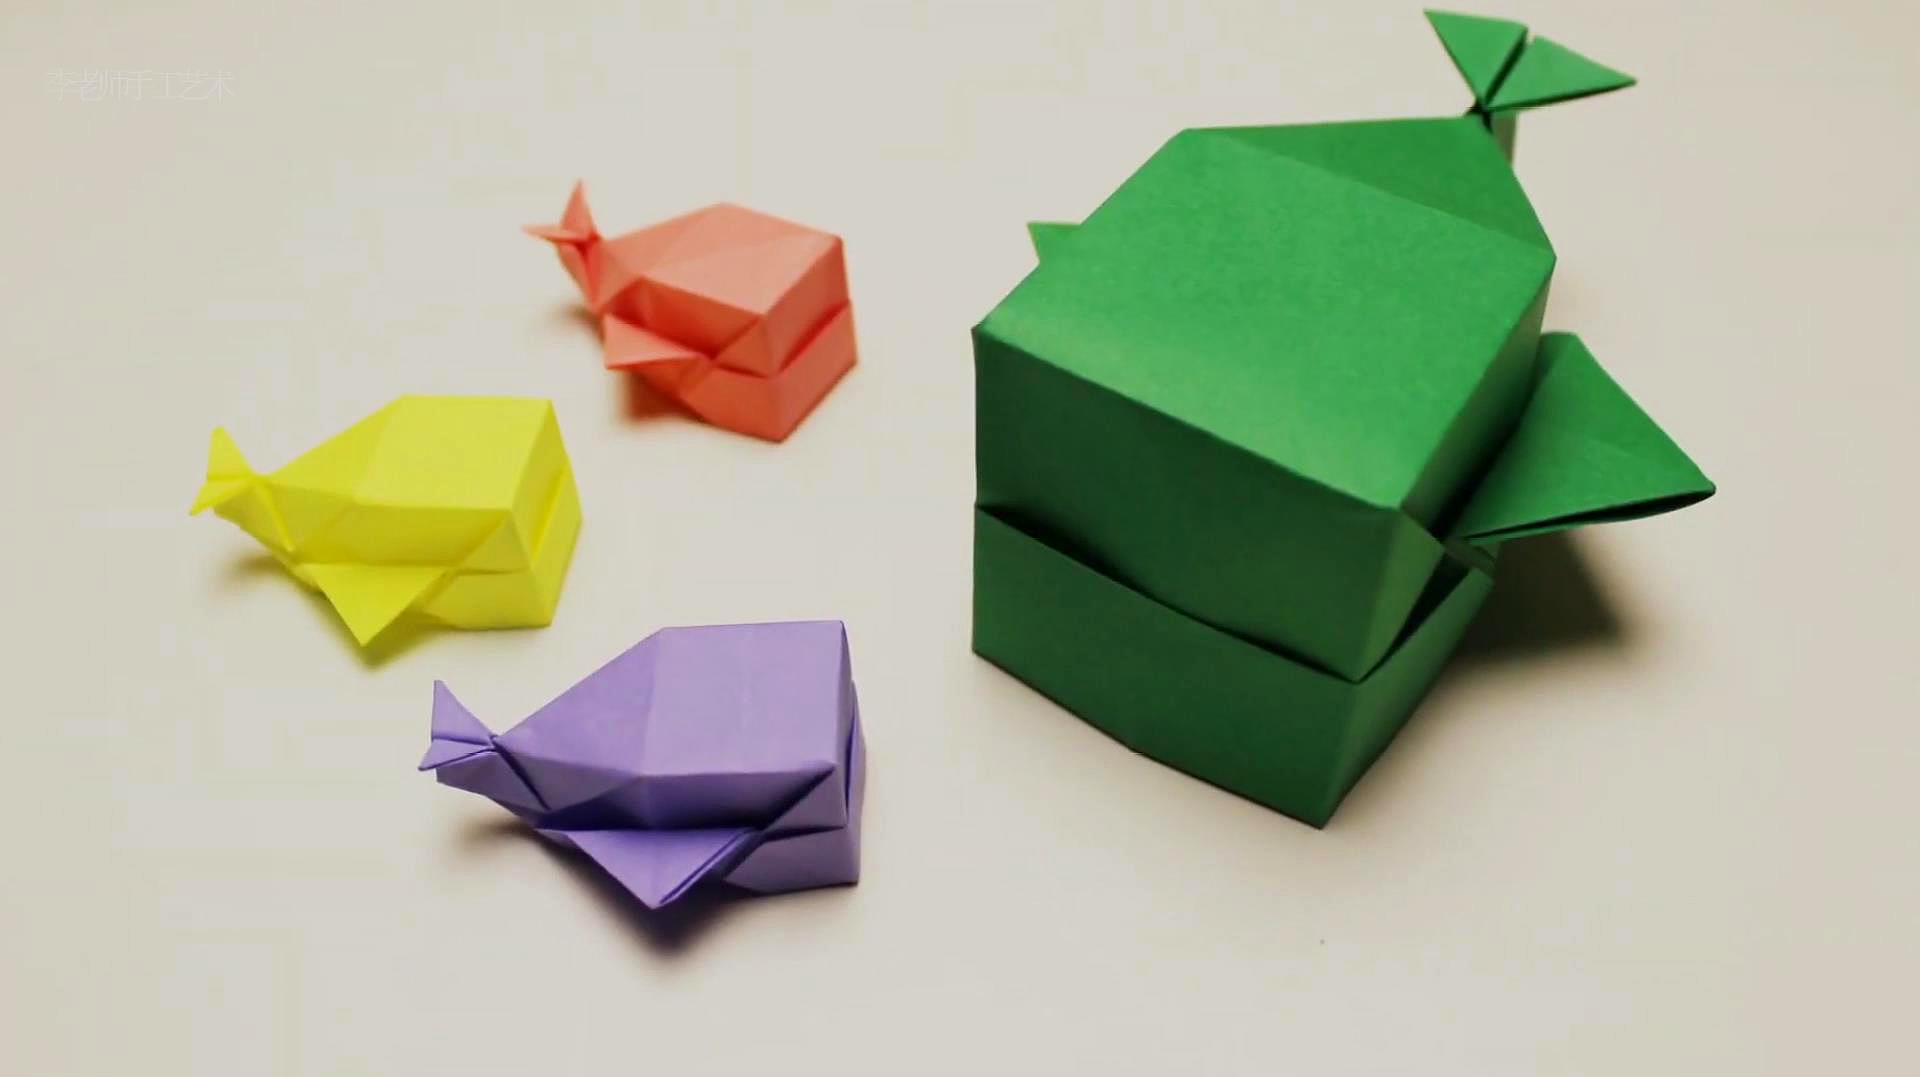 教你用纸折鲸鱼形状的盒子,可以往里面放东西,手工 diy 教程!